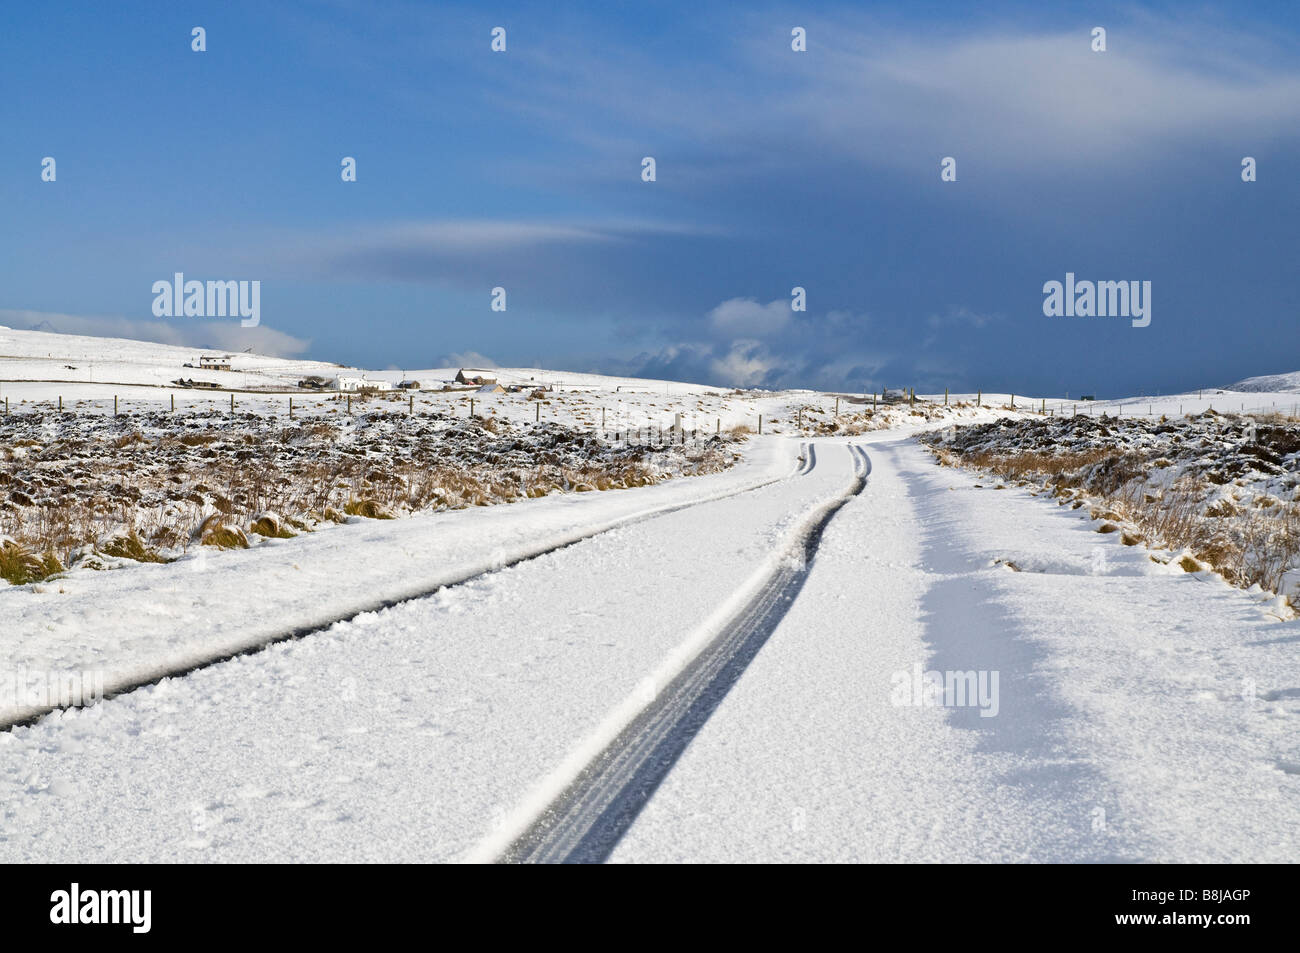 dh ROADS Royaume-Uni Ecosse neige glacée route neige champs pneu Suit les marques d'hiver Orkney sur la voie de campagne à voie ouverte Banque D'Images